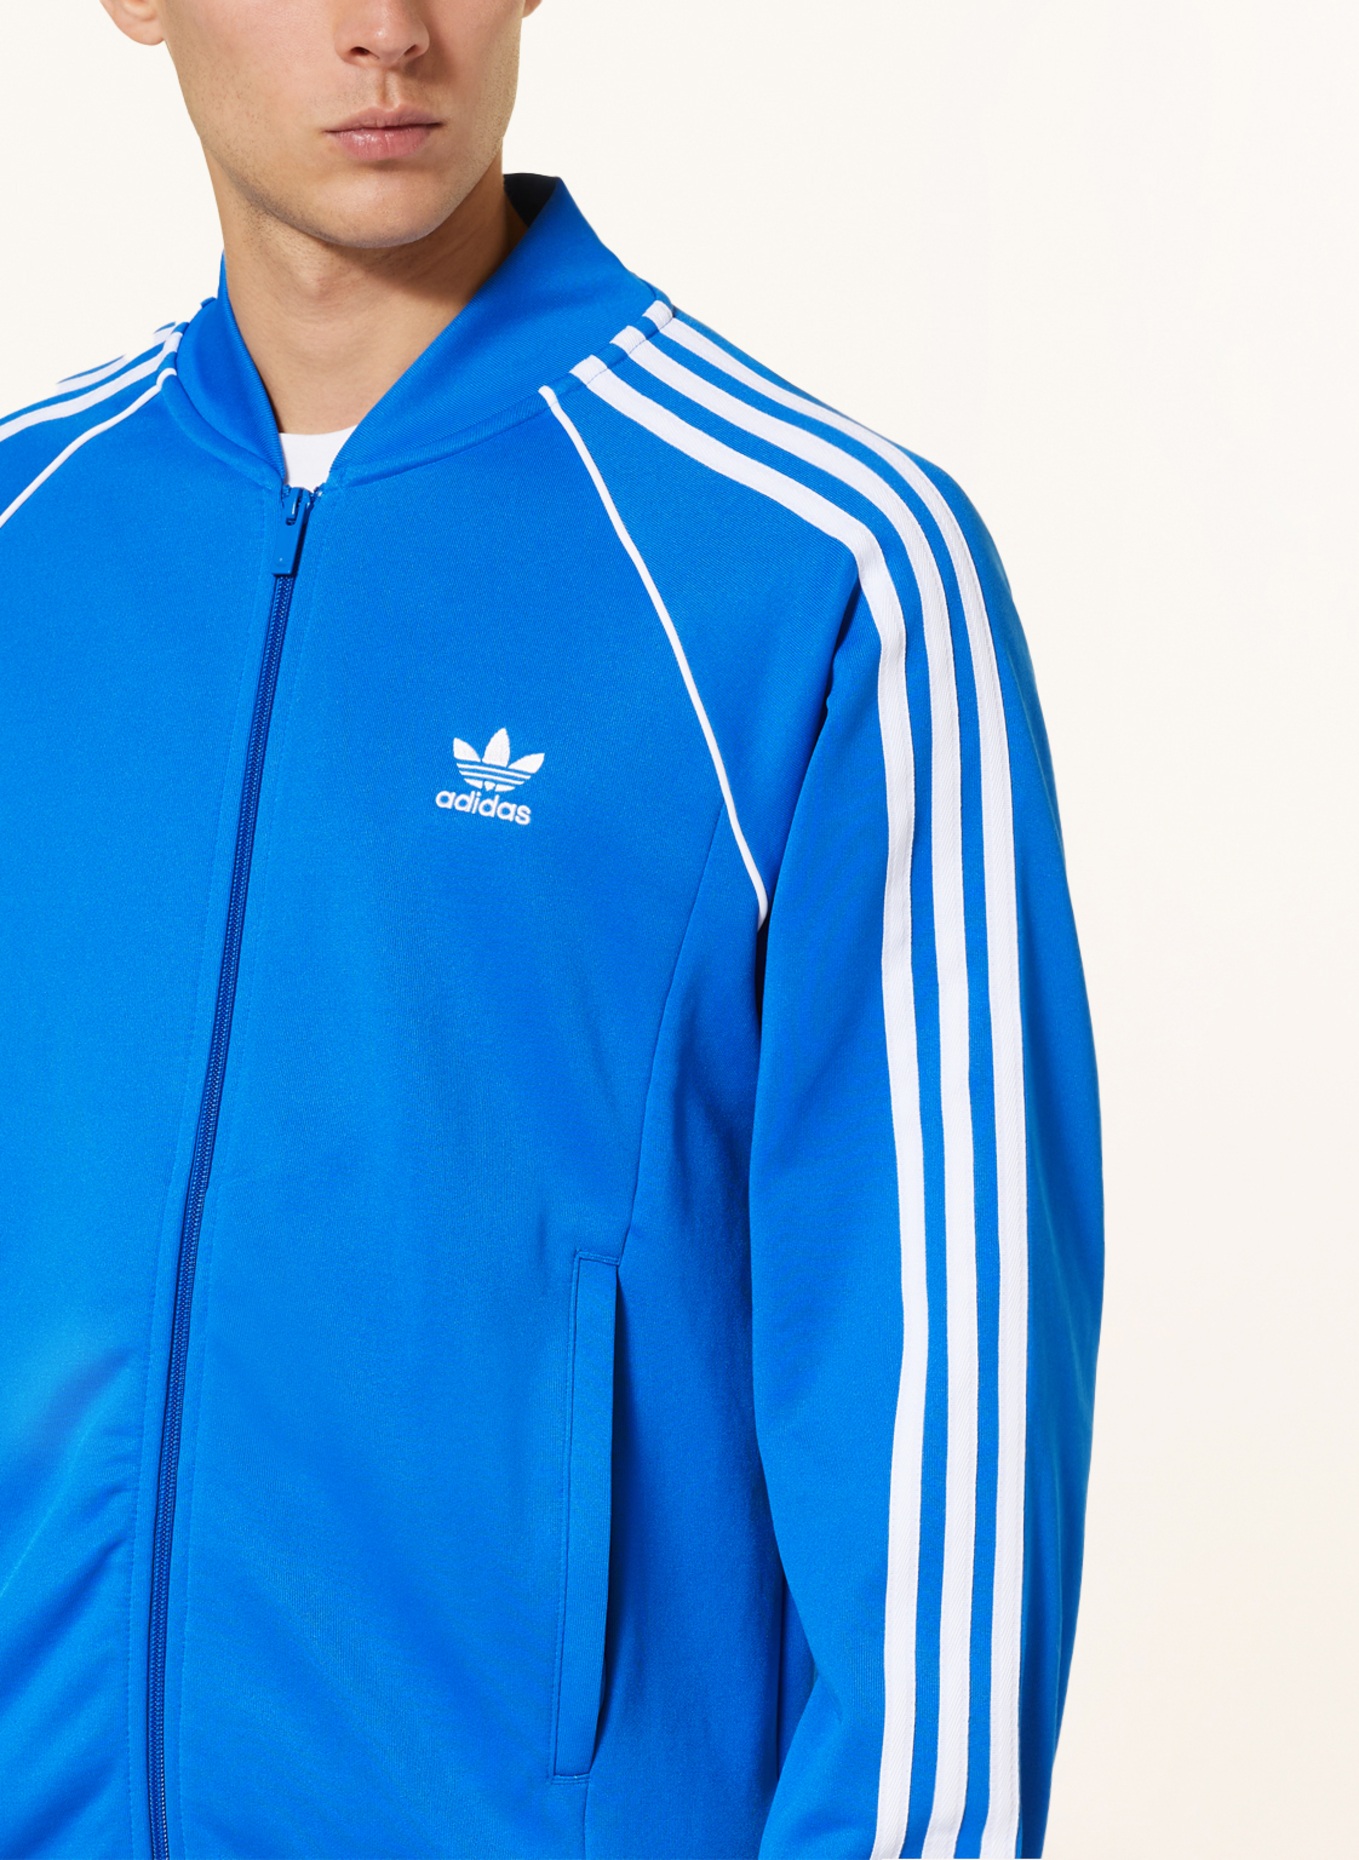 jacket Training ORIGINALS Originals blue/ ADICOLOR white SST CLASSICS adidas in